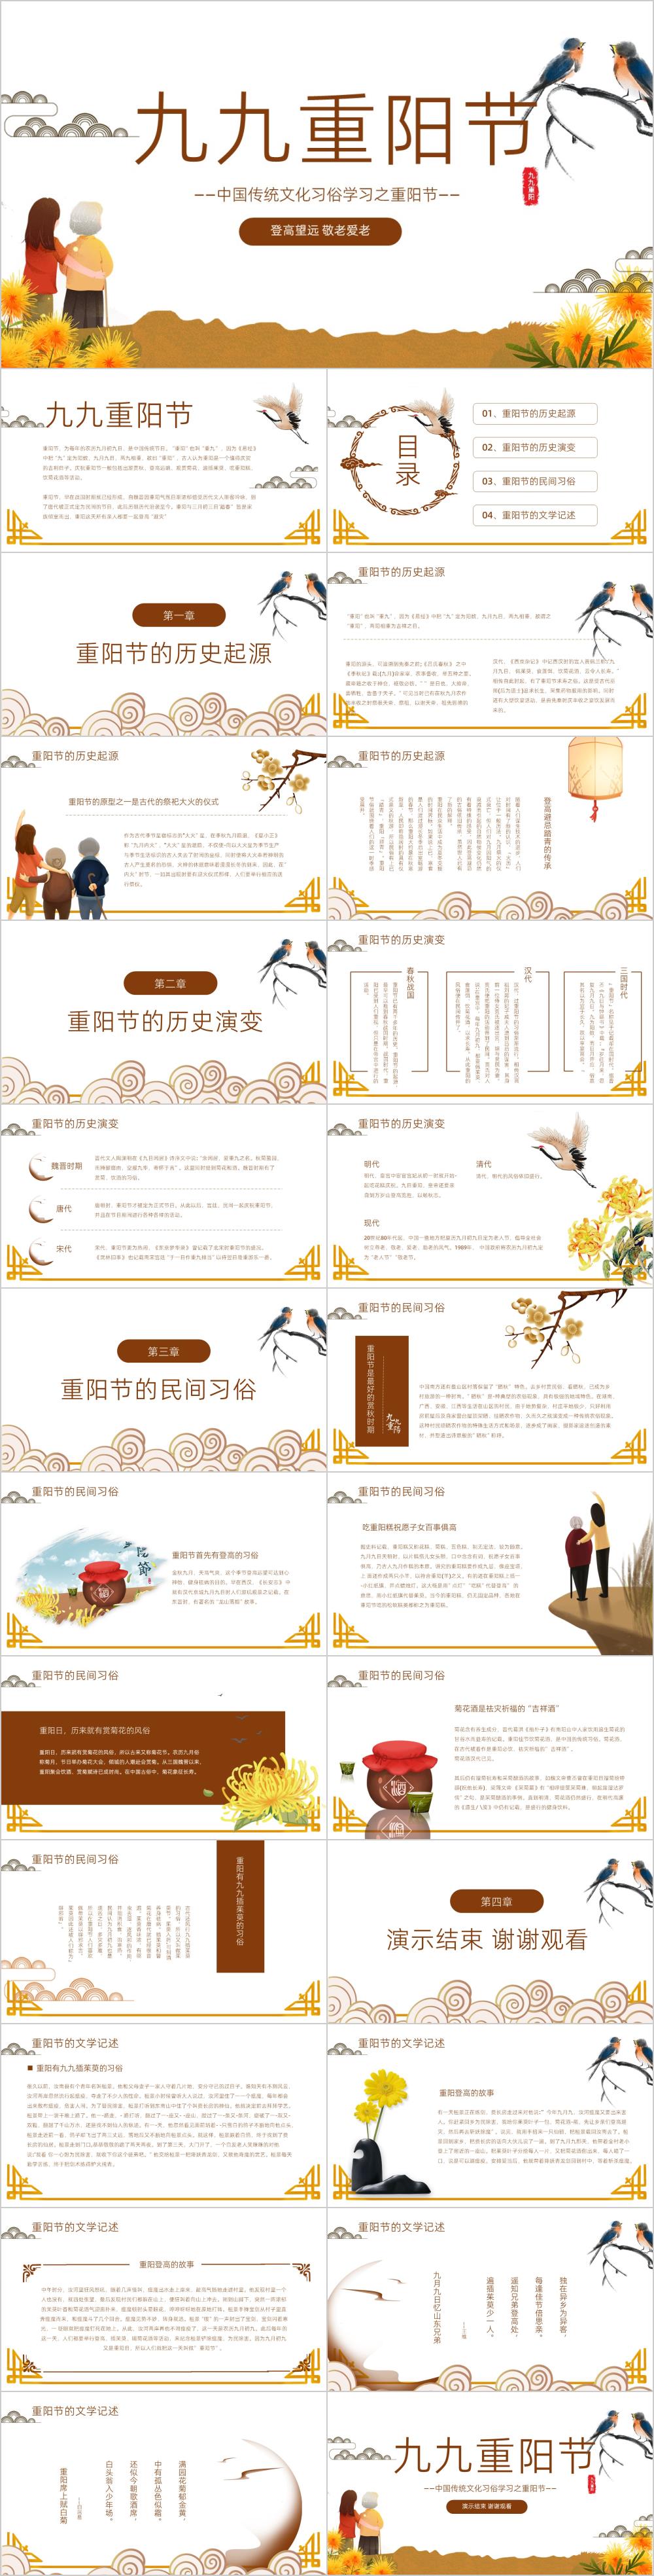 中国传统文化习俗学习重阳节PPT模板